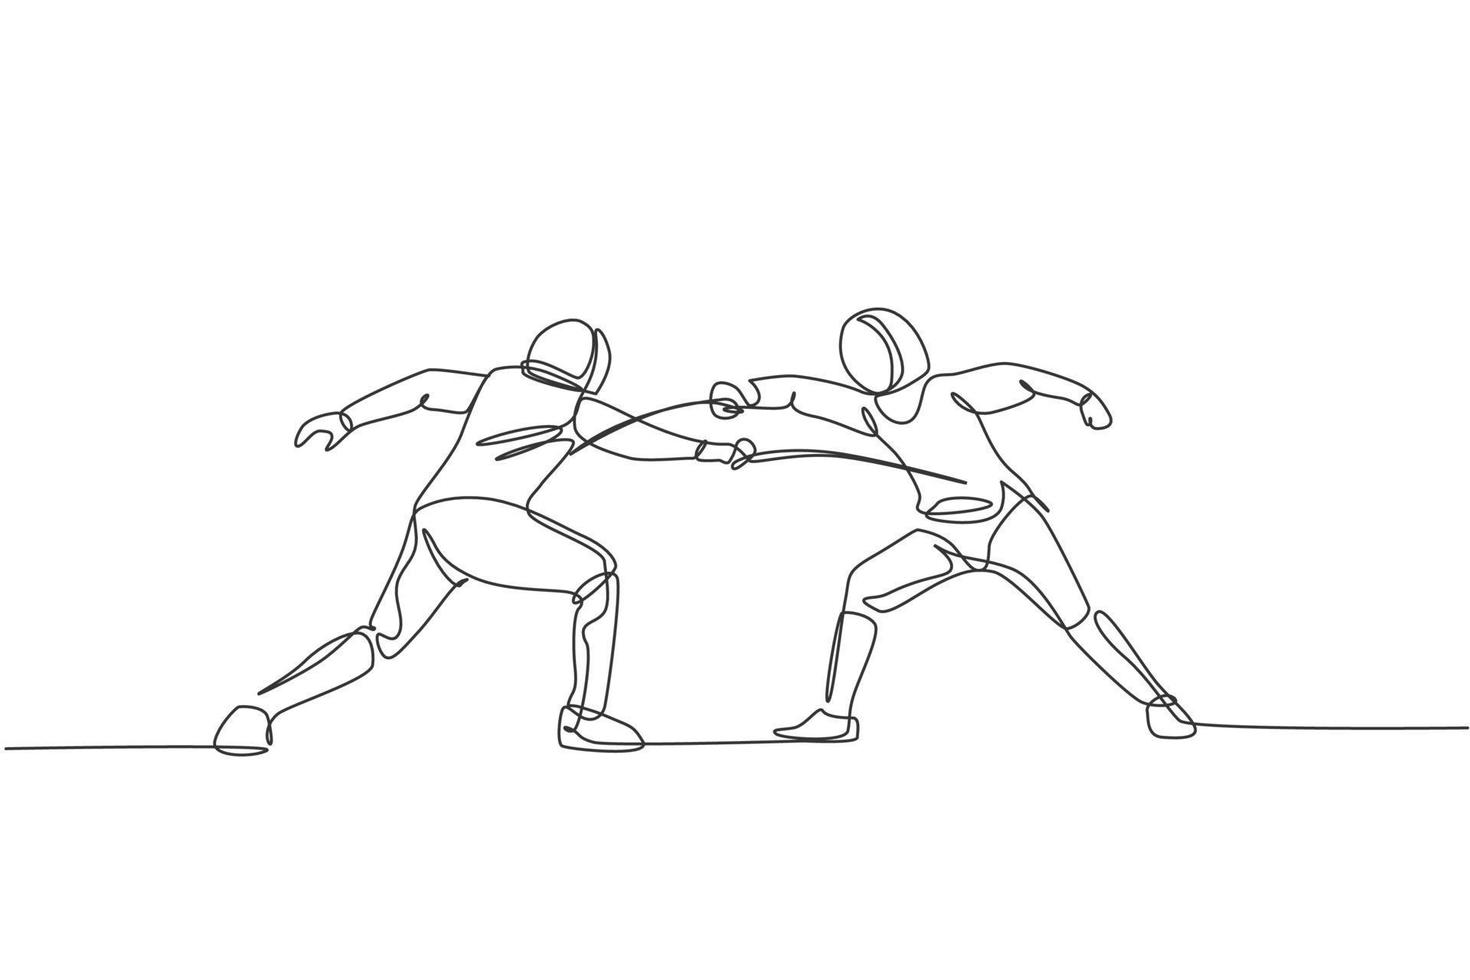 um desenho de linha contínua de dois homens esgrima praticando atleta lutando na arena de esporte profissional. fantasia de esgrima e segurando o conceito de espada. ilustração em vetor design de desenho de linha única dinâmica